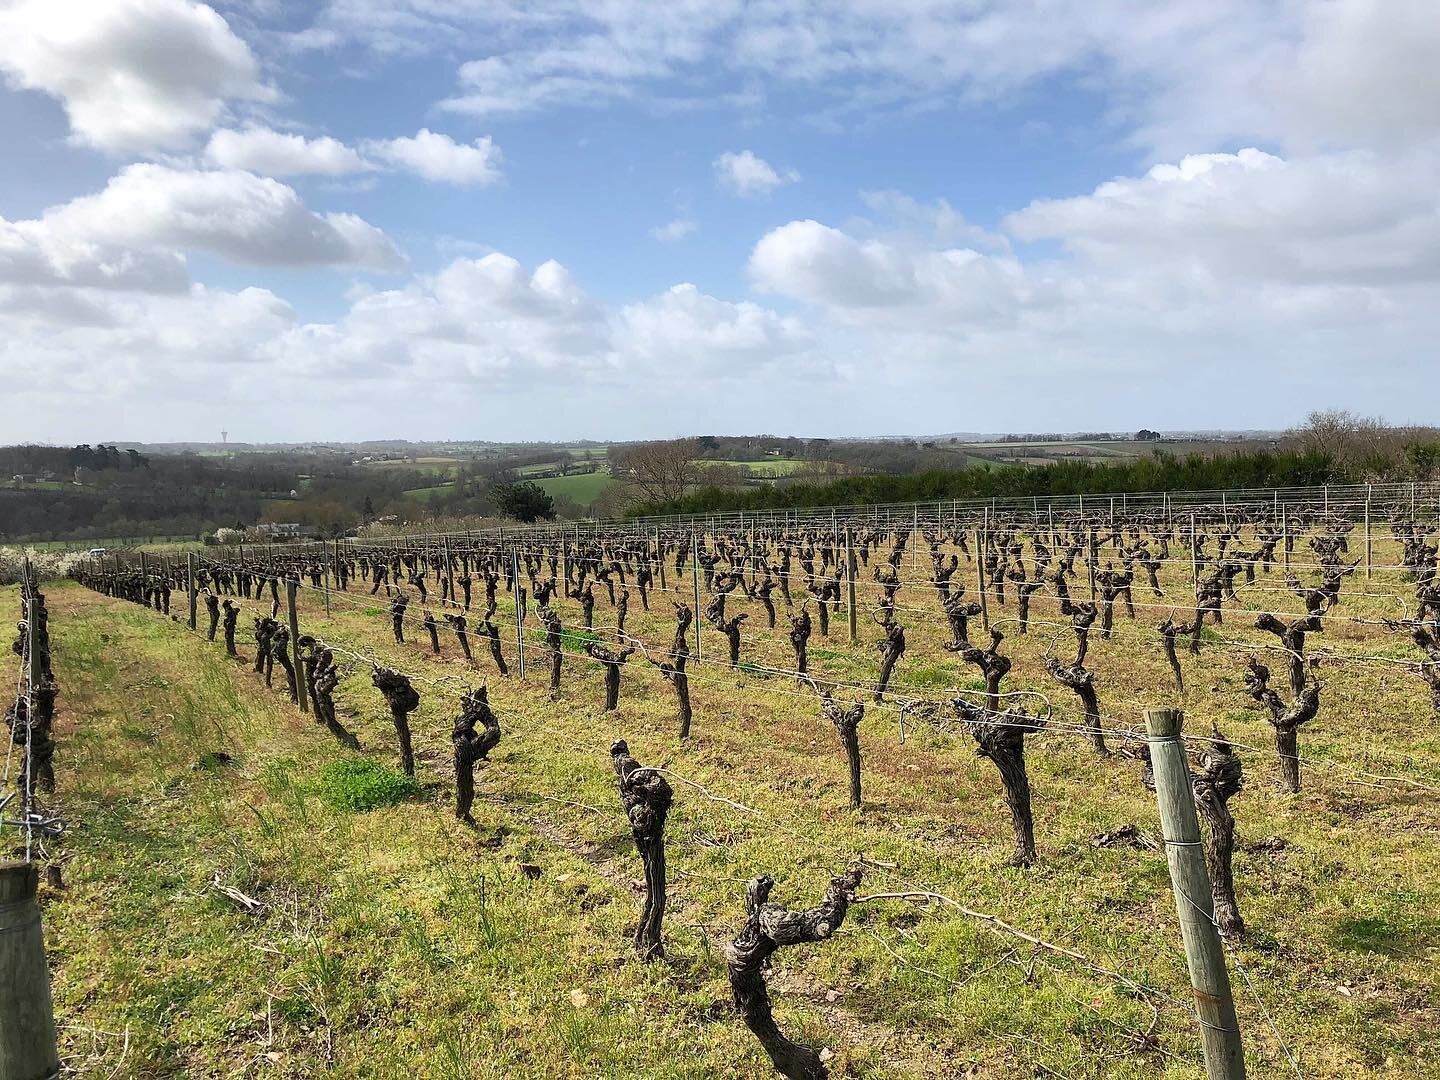 Garo&rsquo;Vin擁有在羅亞爾河安茹Anjou 平均達40年以上的老藤葡萄園，其中最老的葡萄藤達到了70與80歲的年紀，當我們踏入在葡萄園可以發現園中土壤是黏土與頁岩組合的，也有著良好的通風環境，在這裡的卡本內弗朗Cab Franc，跟隨著風土表現出憂鬱氣息的深色水果，以及充滿流線型的單寧，優雅清新略帶點青椒和泥土味。
.
聯繫我們 @rootstockselections
sales@rootstockselections.com
.
Pictured here are some 4